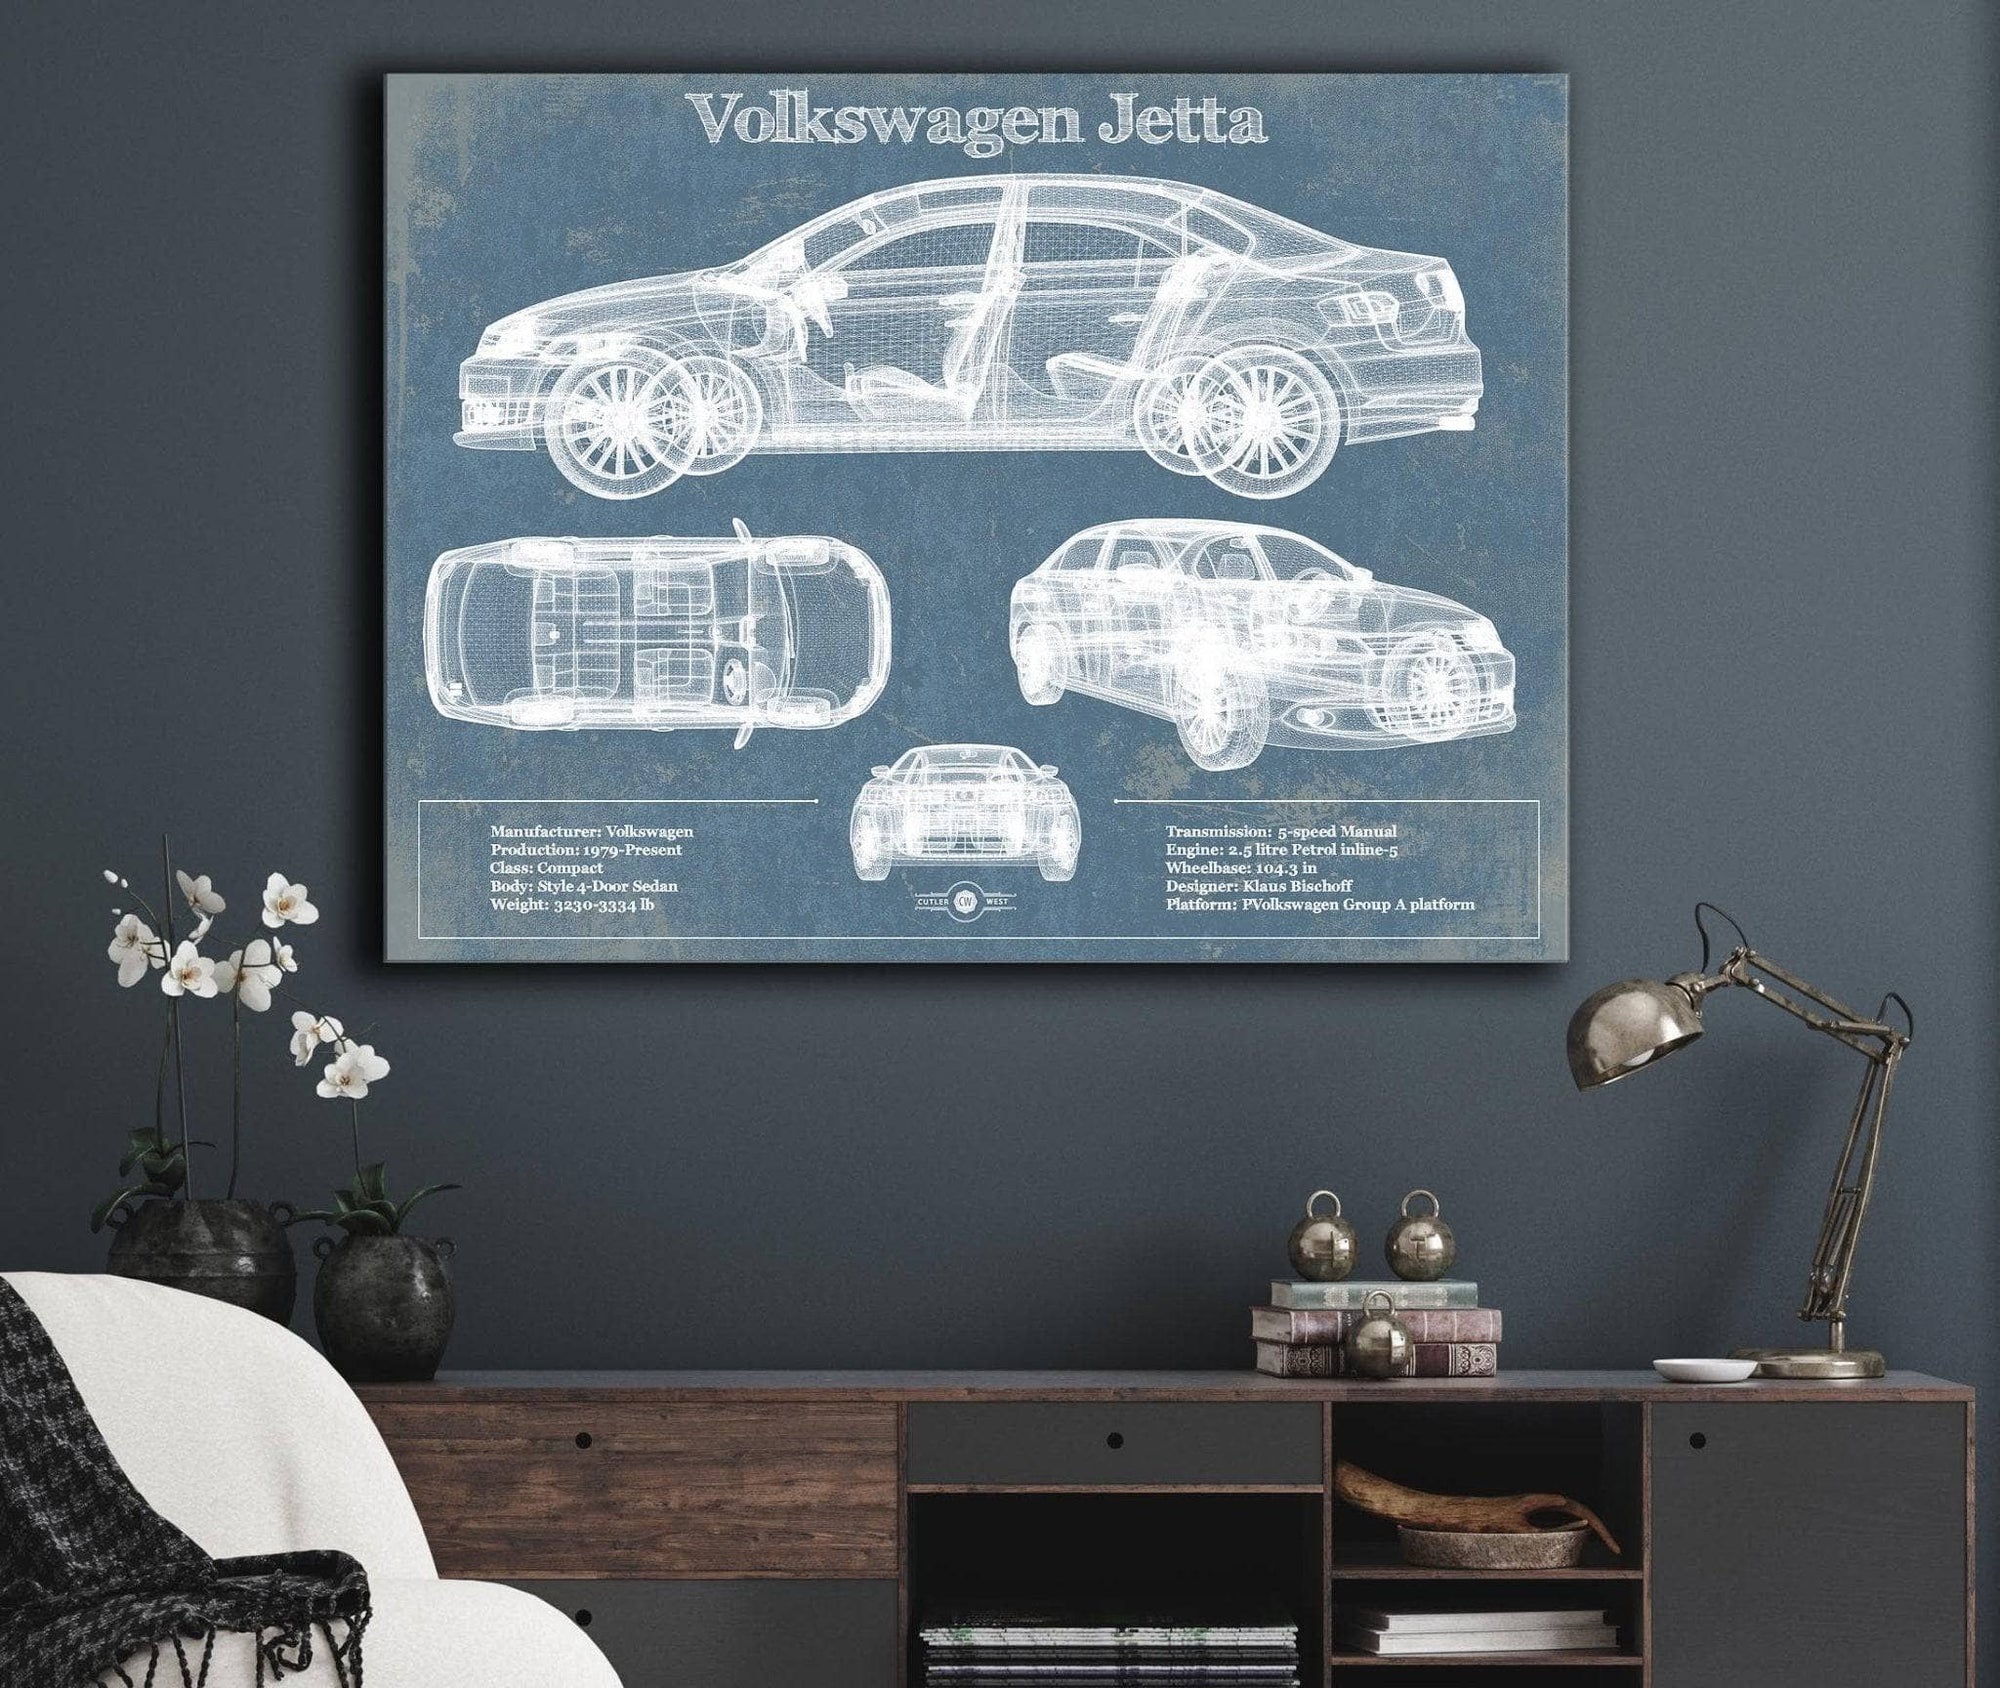 Cutler West Vehicle Collection Volkswagen Jetta Vintage Blueprint Auto Print